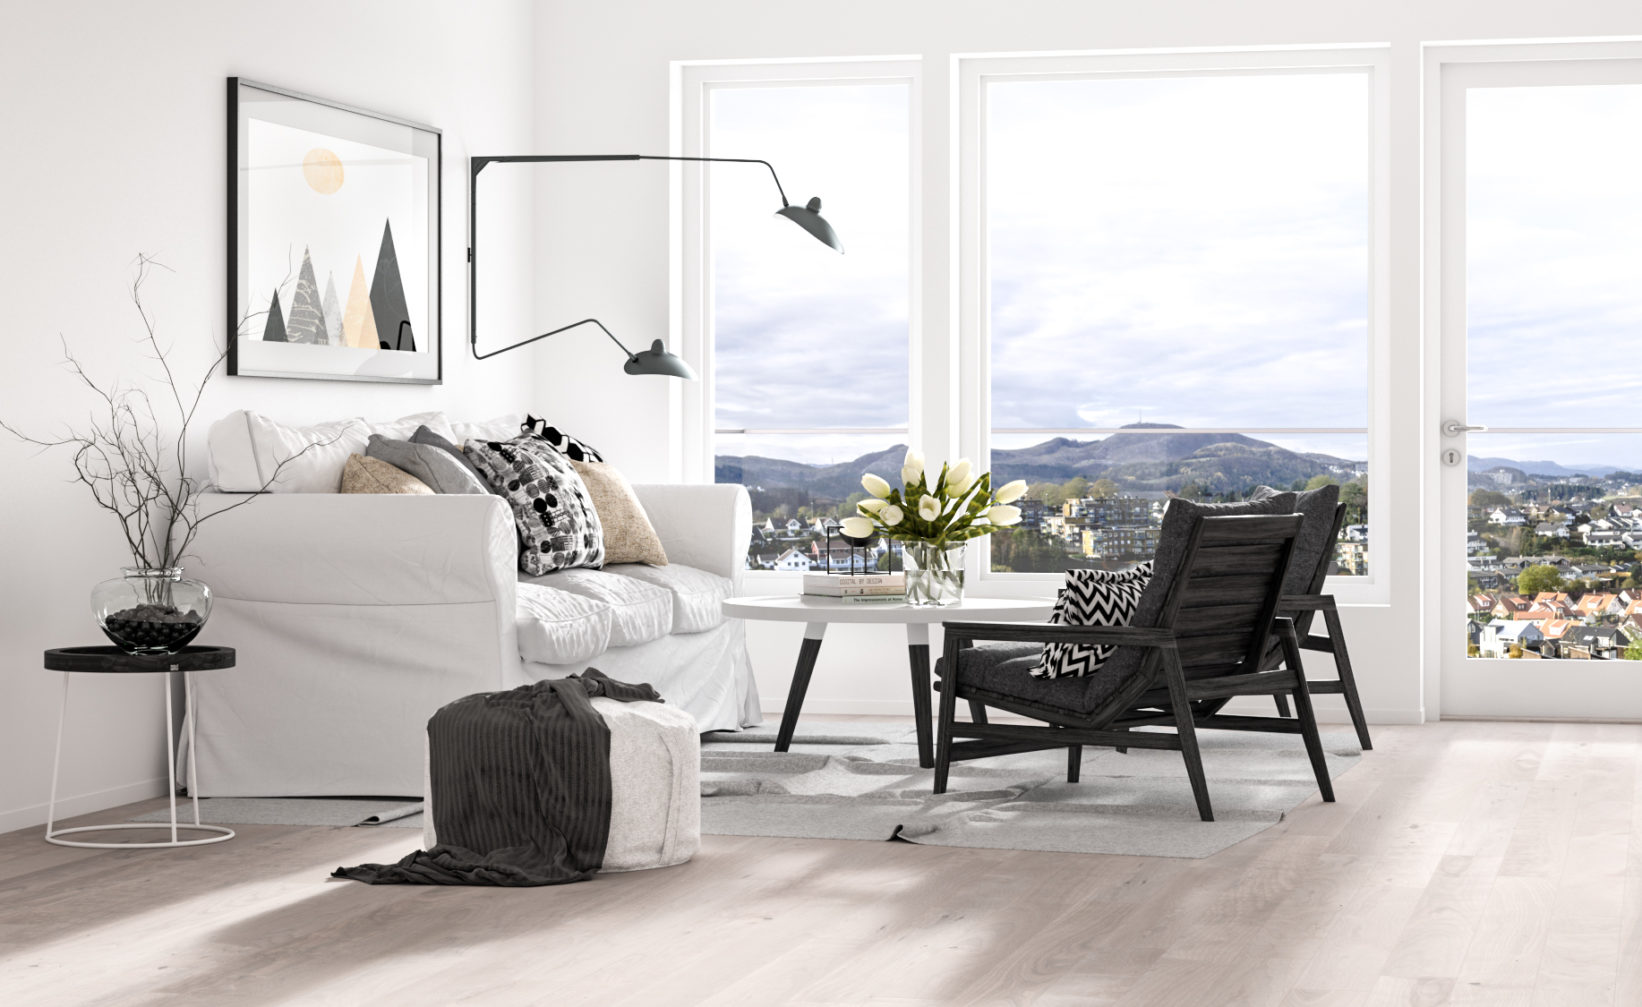 en hvit stue med utsikt over en by, laget i 2016 for å visualisere salget av eiendomsmegler Eiendomsmegler1.